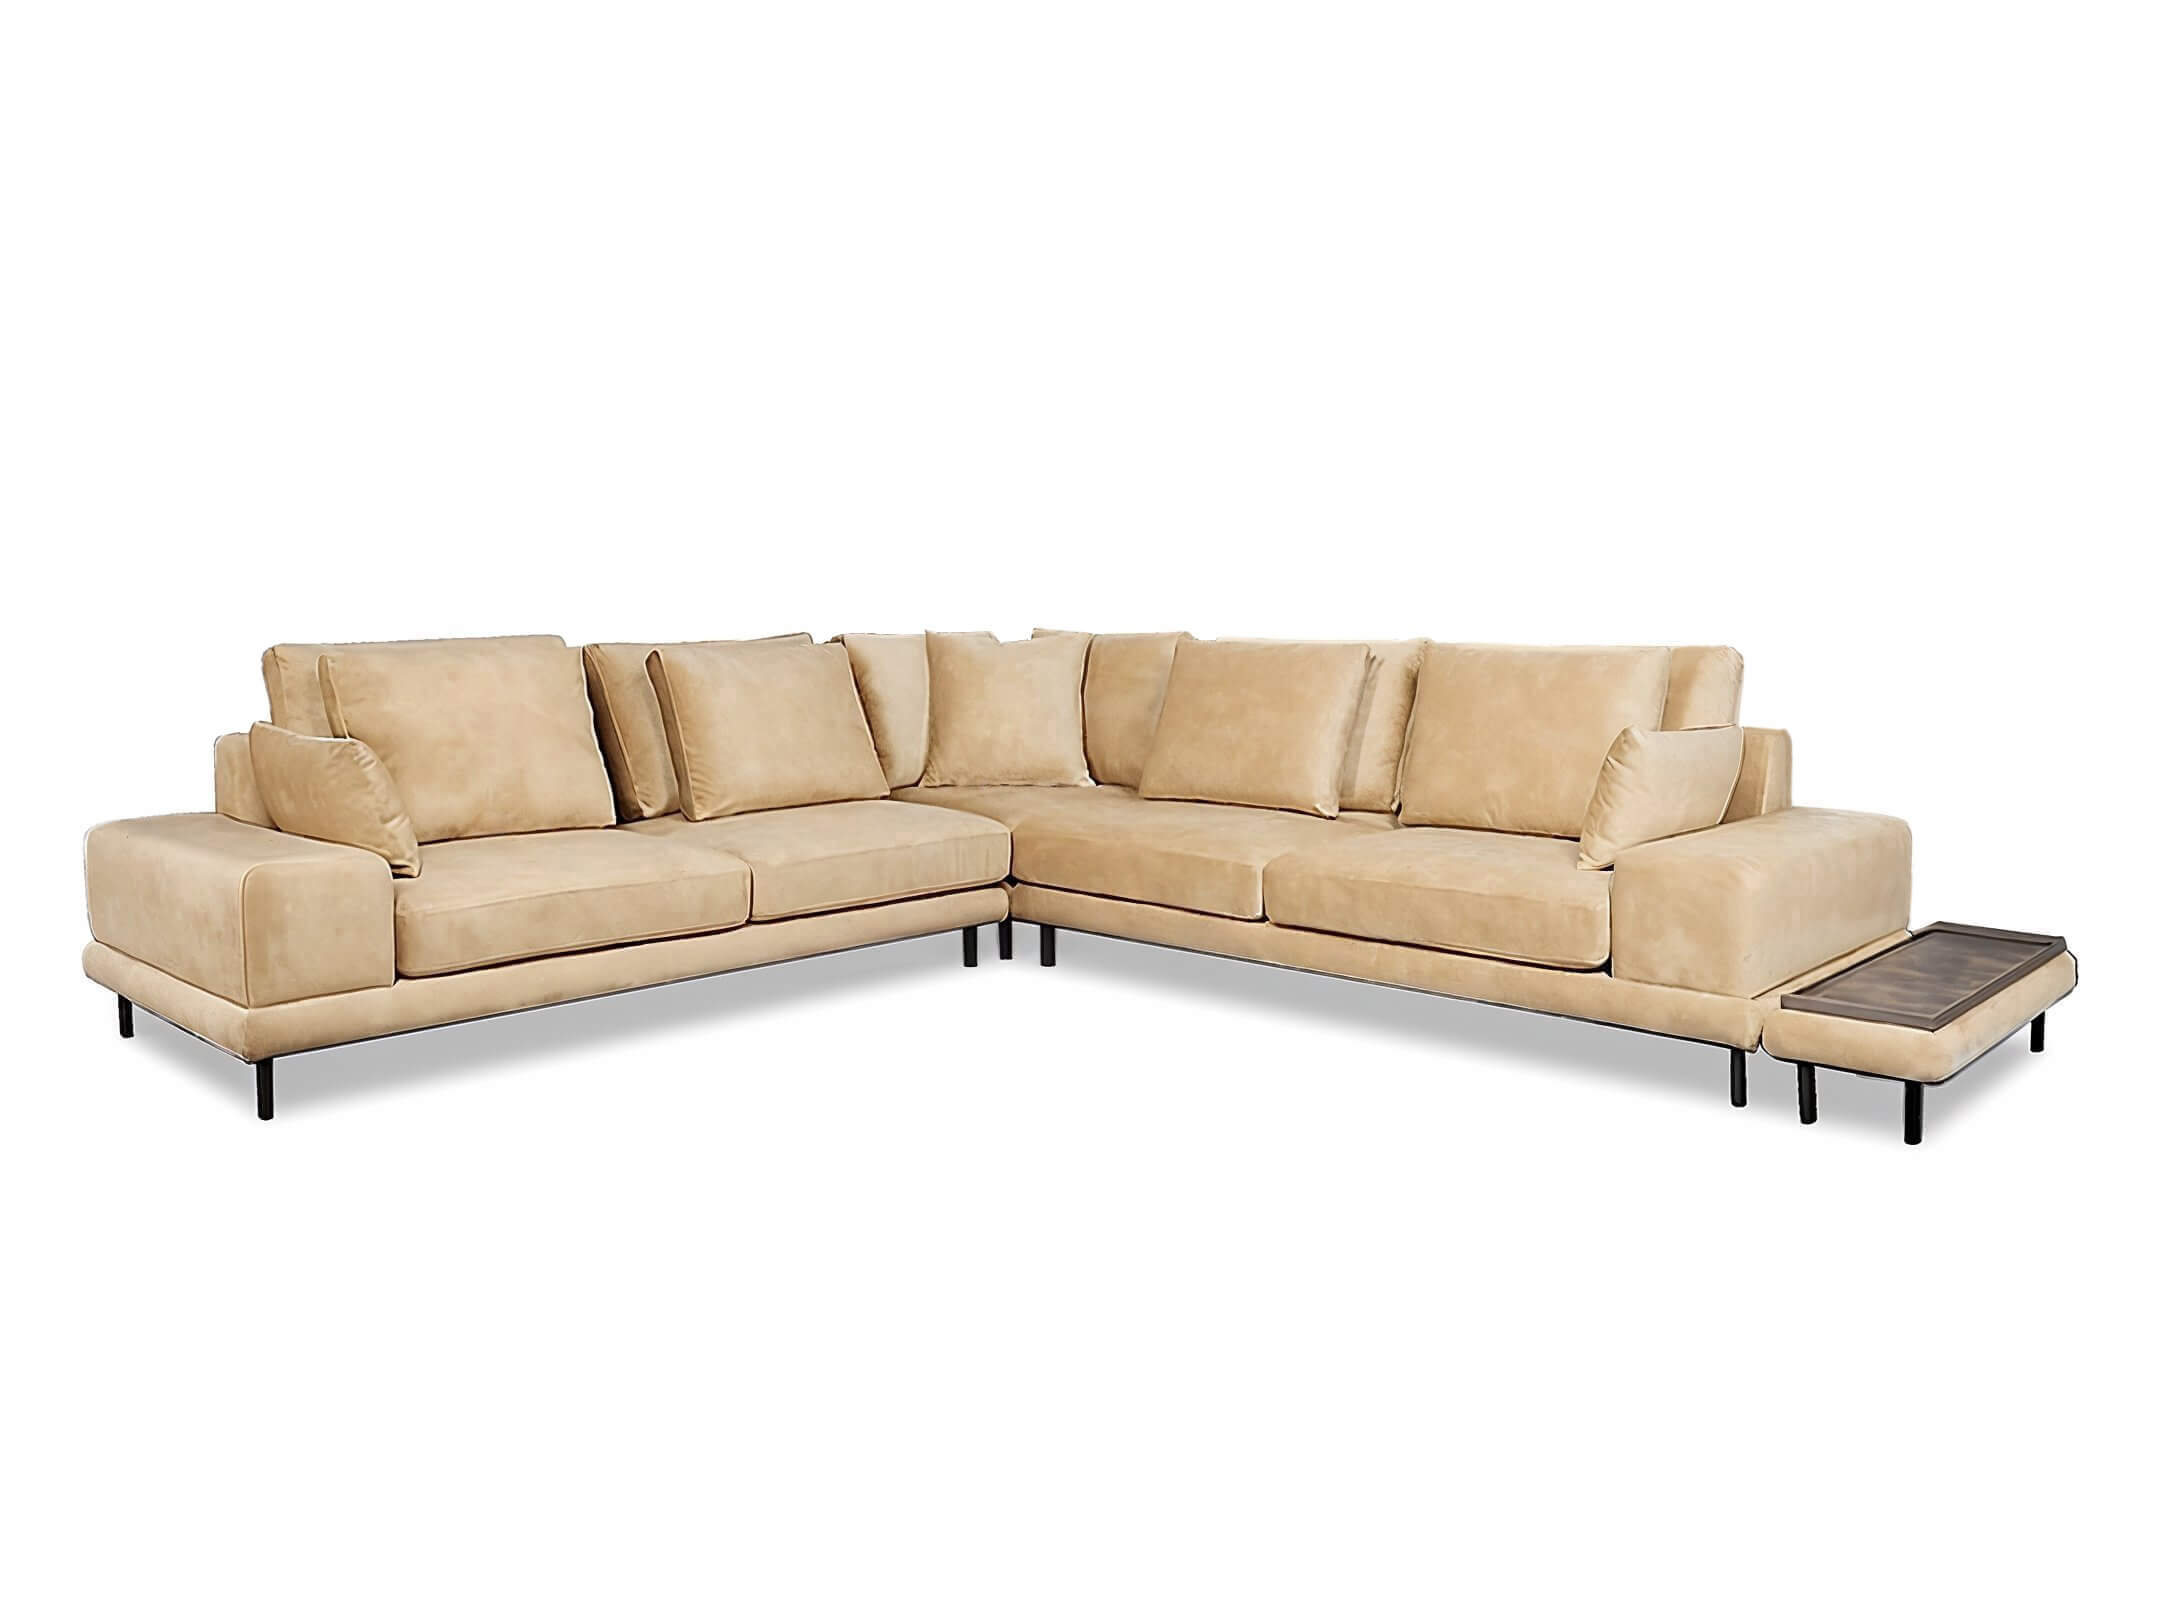 γωνιακός καναπές Πορτοφίνο / Golden beige